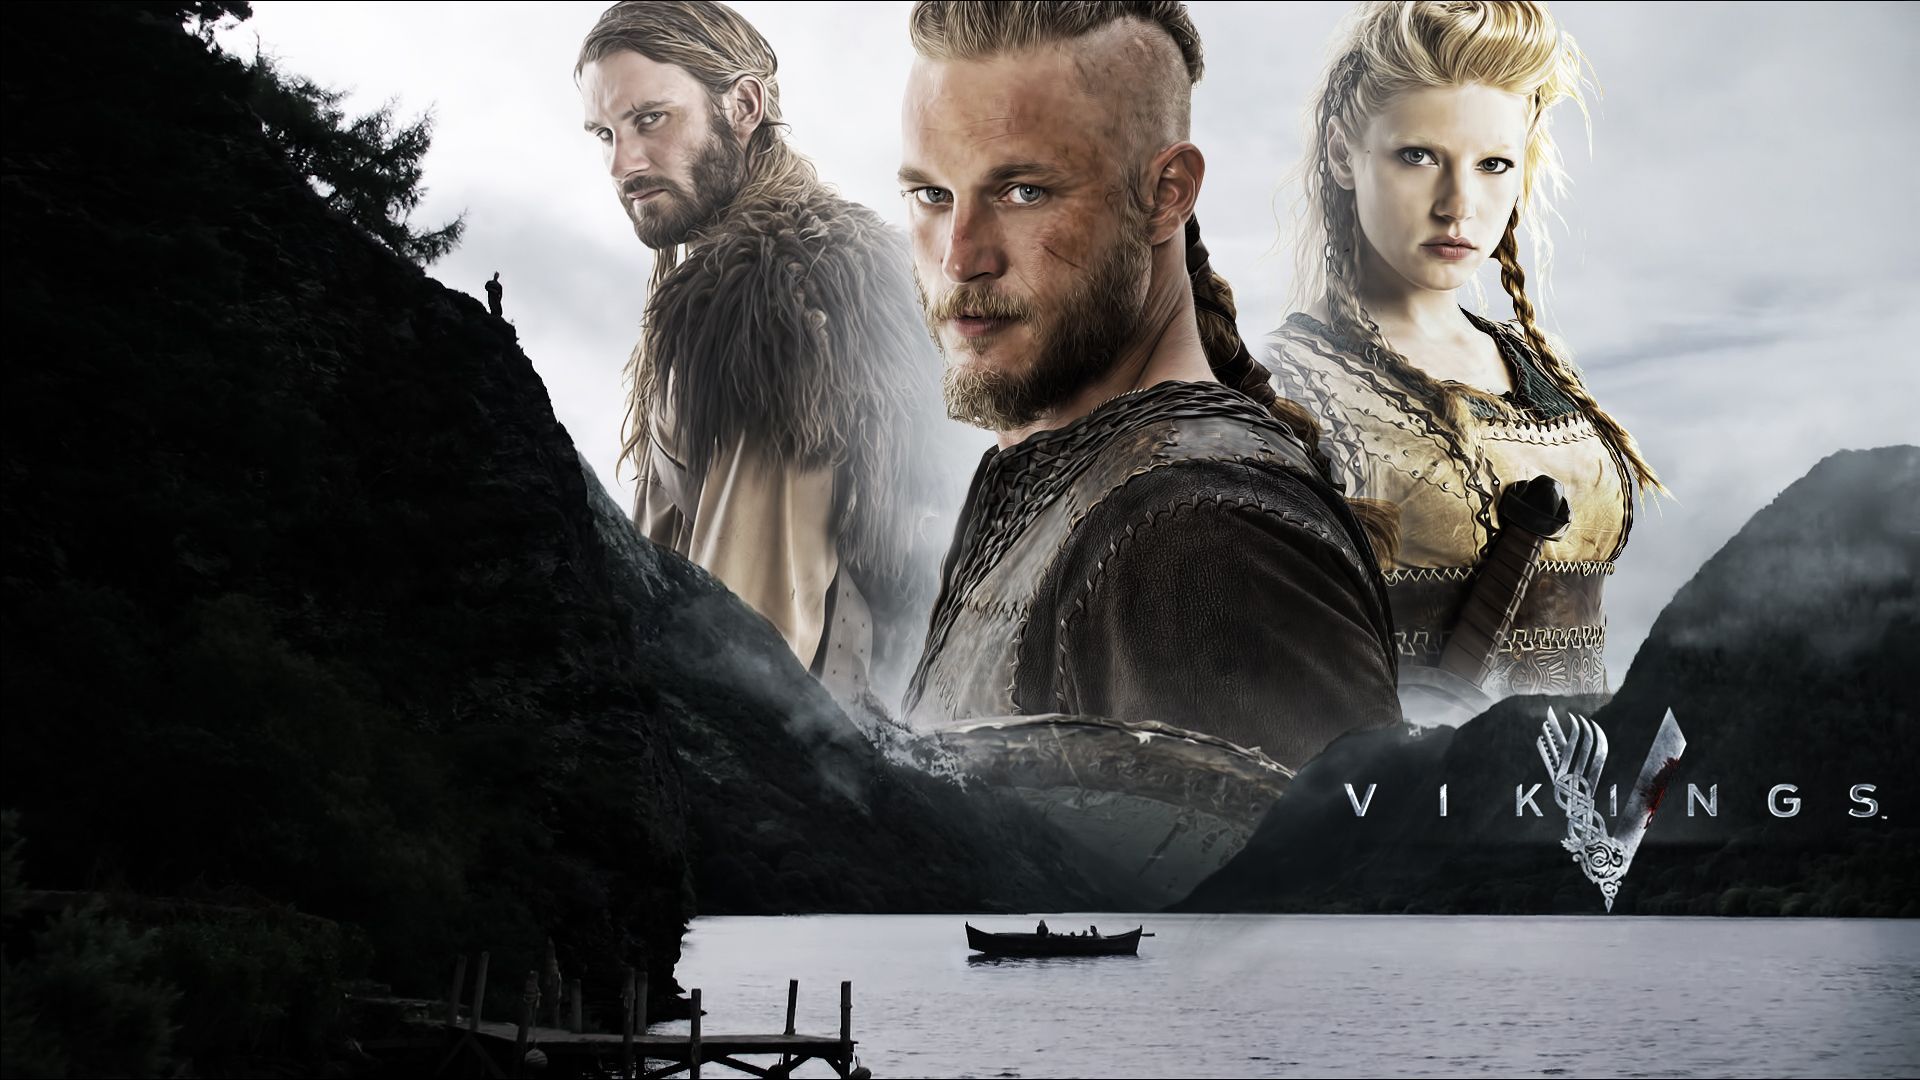 Vikings 2013 TV Series Wallpapers | HD Wallpapers